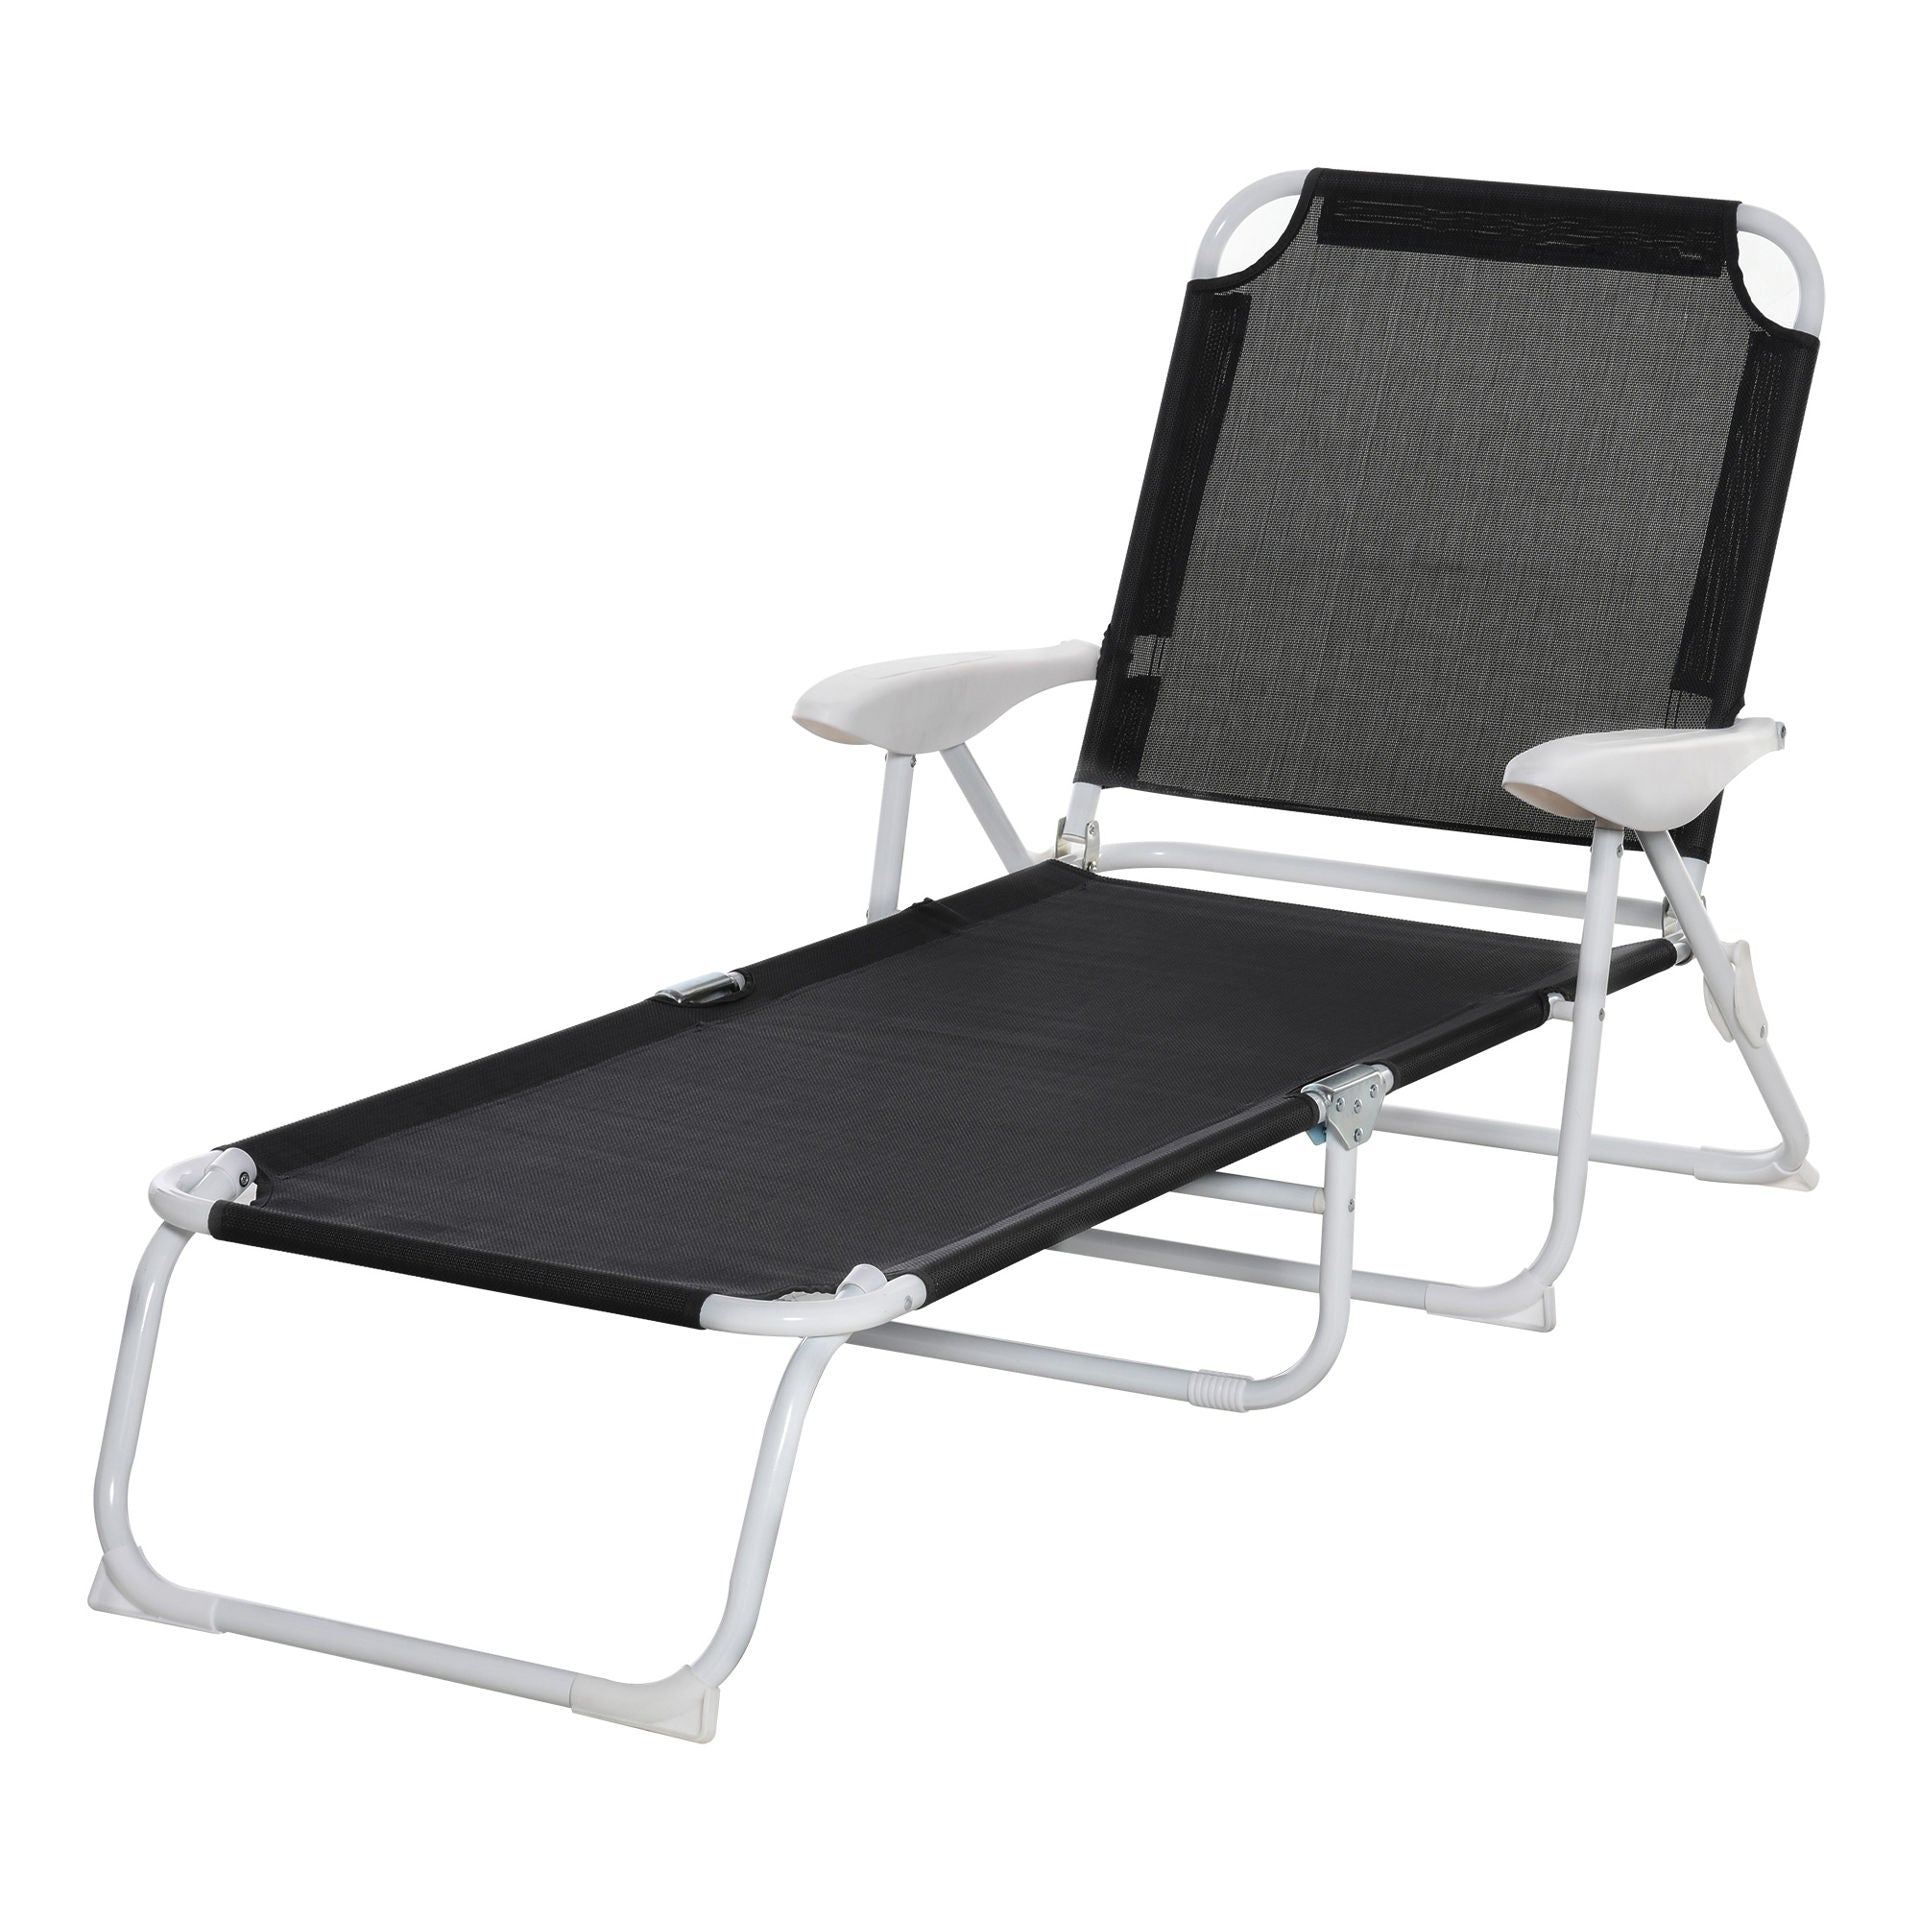 Chaise de plage pliable Airlie de Nancy - Chaise longue - Chaise longue - Noir - Métal - Maille